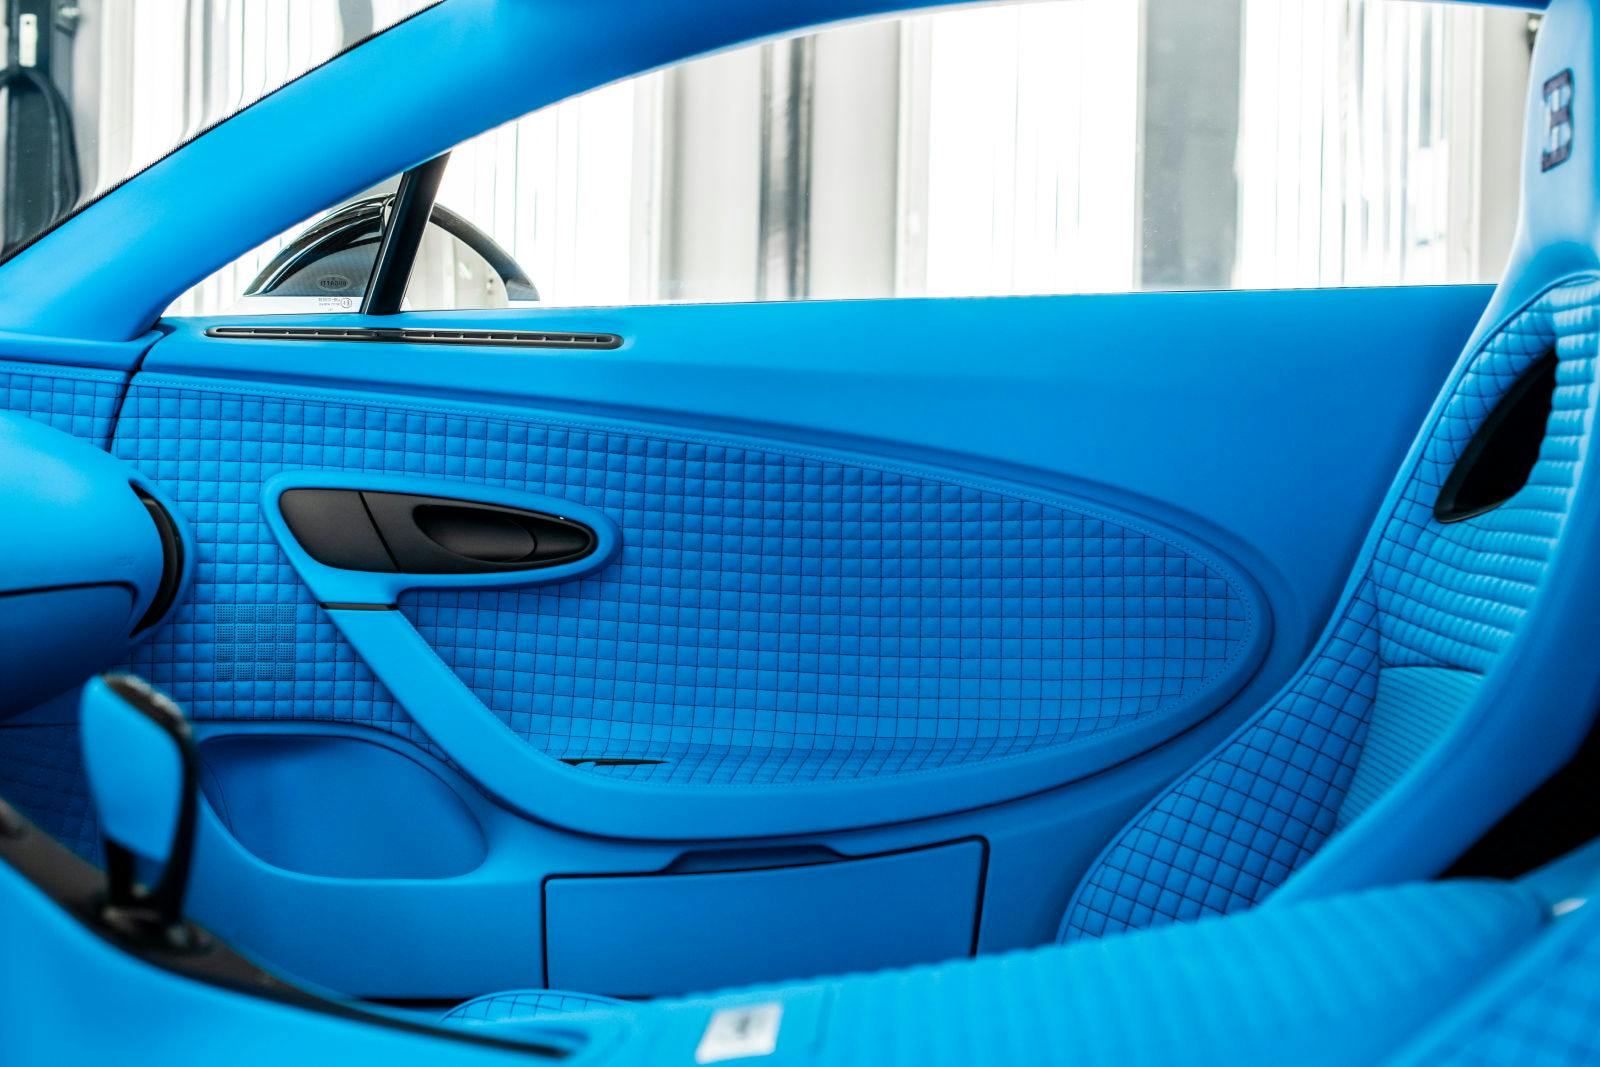 La couleur Light Blue Sport fait écho à la célèbre nuance de bleu de l’EB110.